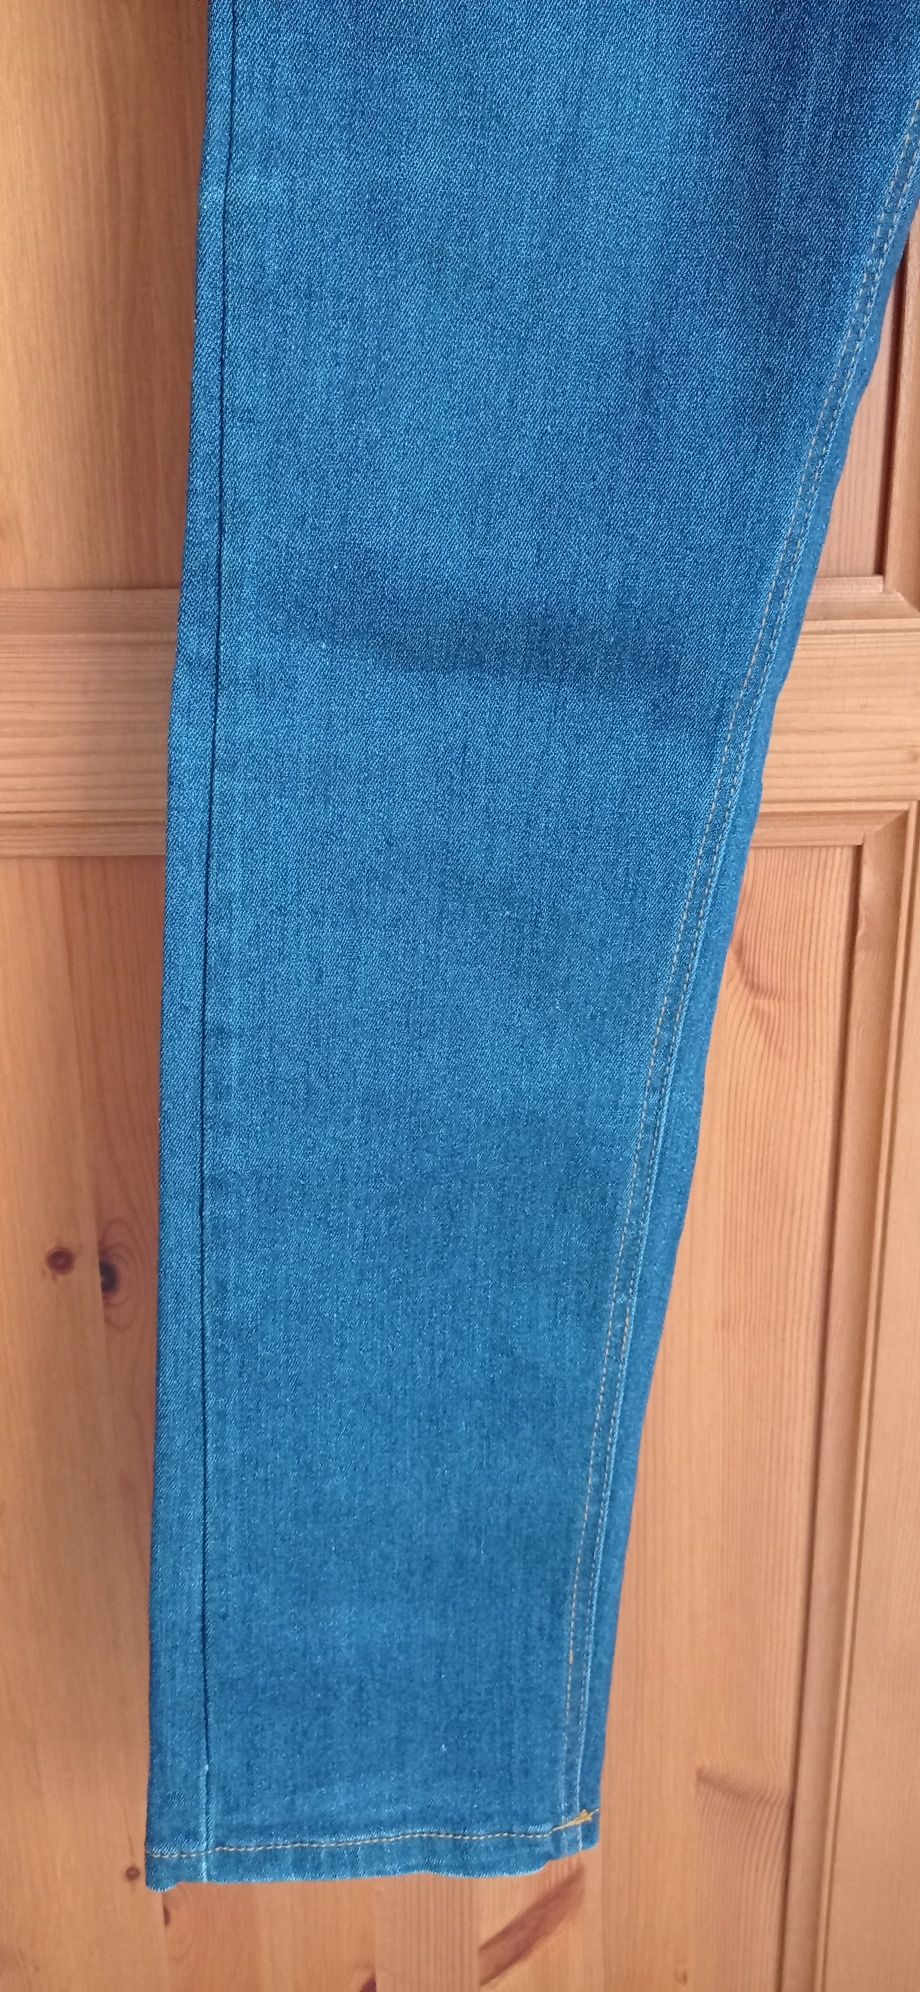 Markowe spodnie jeansowe CROPP bawełna + elastan za mniej niż 1/5 ceny